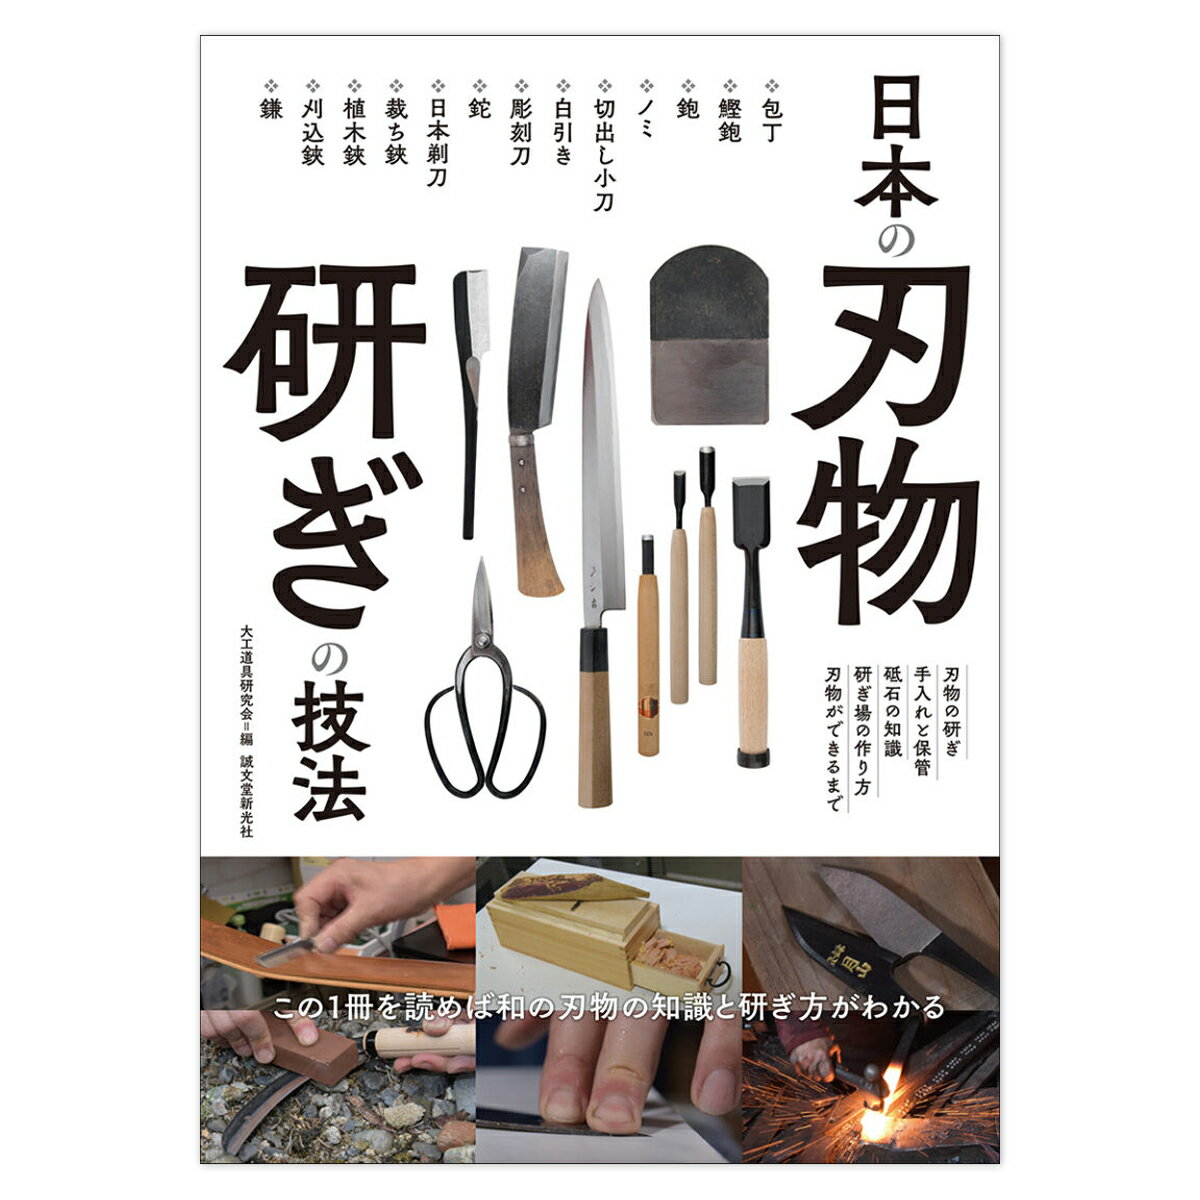 編集者名：大工道具研究会 判型：B5 ページ数：160 包丁や大工道具、彫刻刀、斧や鉈(ナタ)、刈込鋏、日本剃刀、裁ち鋏など、さまざまな日本の刃物の研ぎ方を紹介した書籍が発売されました。 包丁、大工道具、彫刻刀、剃刀(カミソリ)、鉈(ナタ)…、日本にはさまざまな刃物があり、それらの刃物は使っているうちに切れなくなっていきます。 そこで刃を研ぐことで切れ味を回復させるのですが、刃物によって研ぎ方にも違いがあります。 本書では、包丁、大工道具などの比較的研ぎ方についての情報が多いものから、鰹鉋や彫刻刀、日本剃刀、裁ち鋏などの研ぎ方についての情報が少ない刃物までをできるだけたくさん取り上げることを目的としています。 研ぎが上手くなれば刃物もよく切れるようになる。当たり前のことですが、そのためには普段から研ぐ習慣を身につけたいものです。 そのための研ぎ場の作り方や、砥石の種類、また伝統的な手法で作る刃物の生産現場なども紹介します。